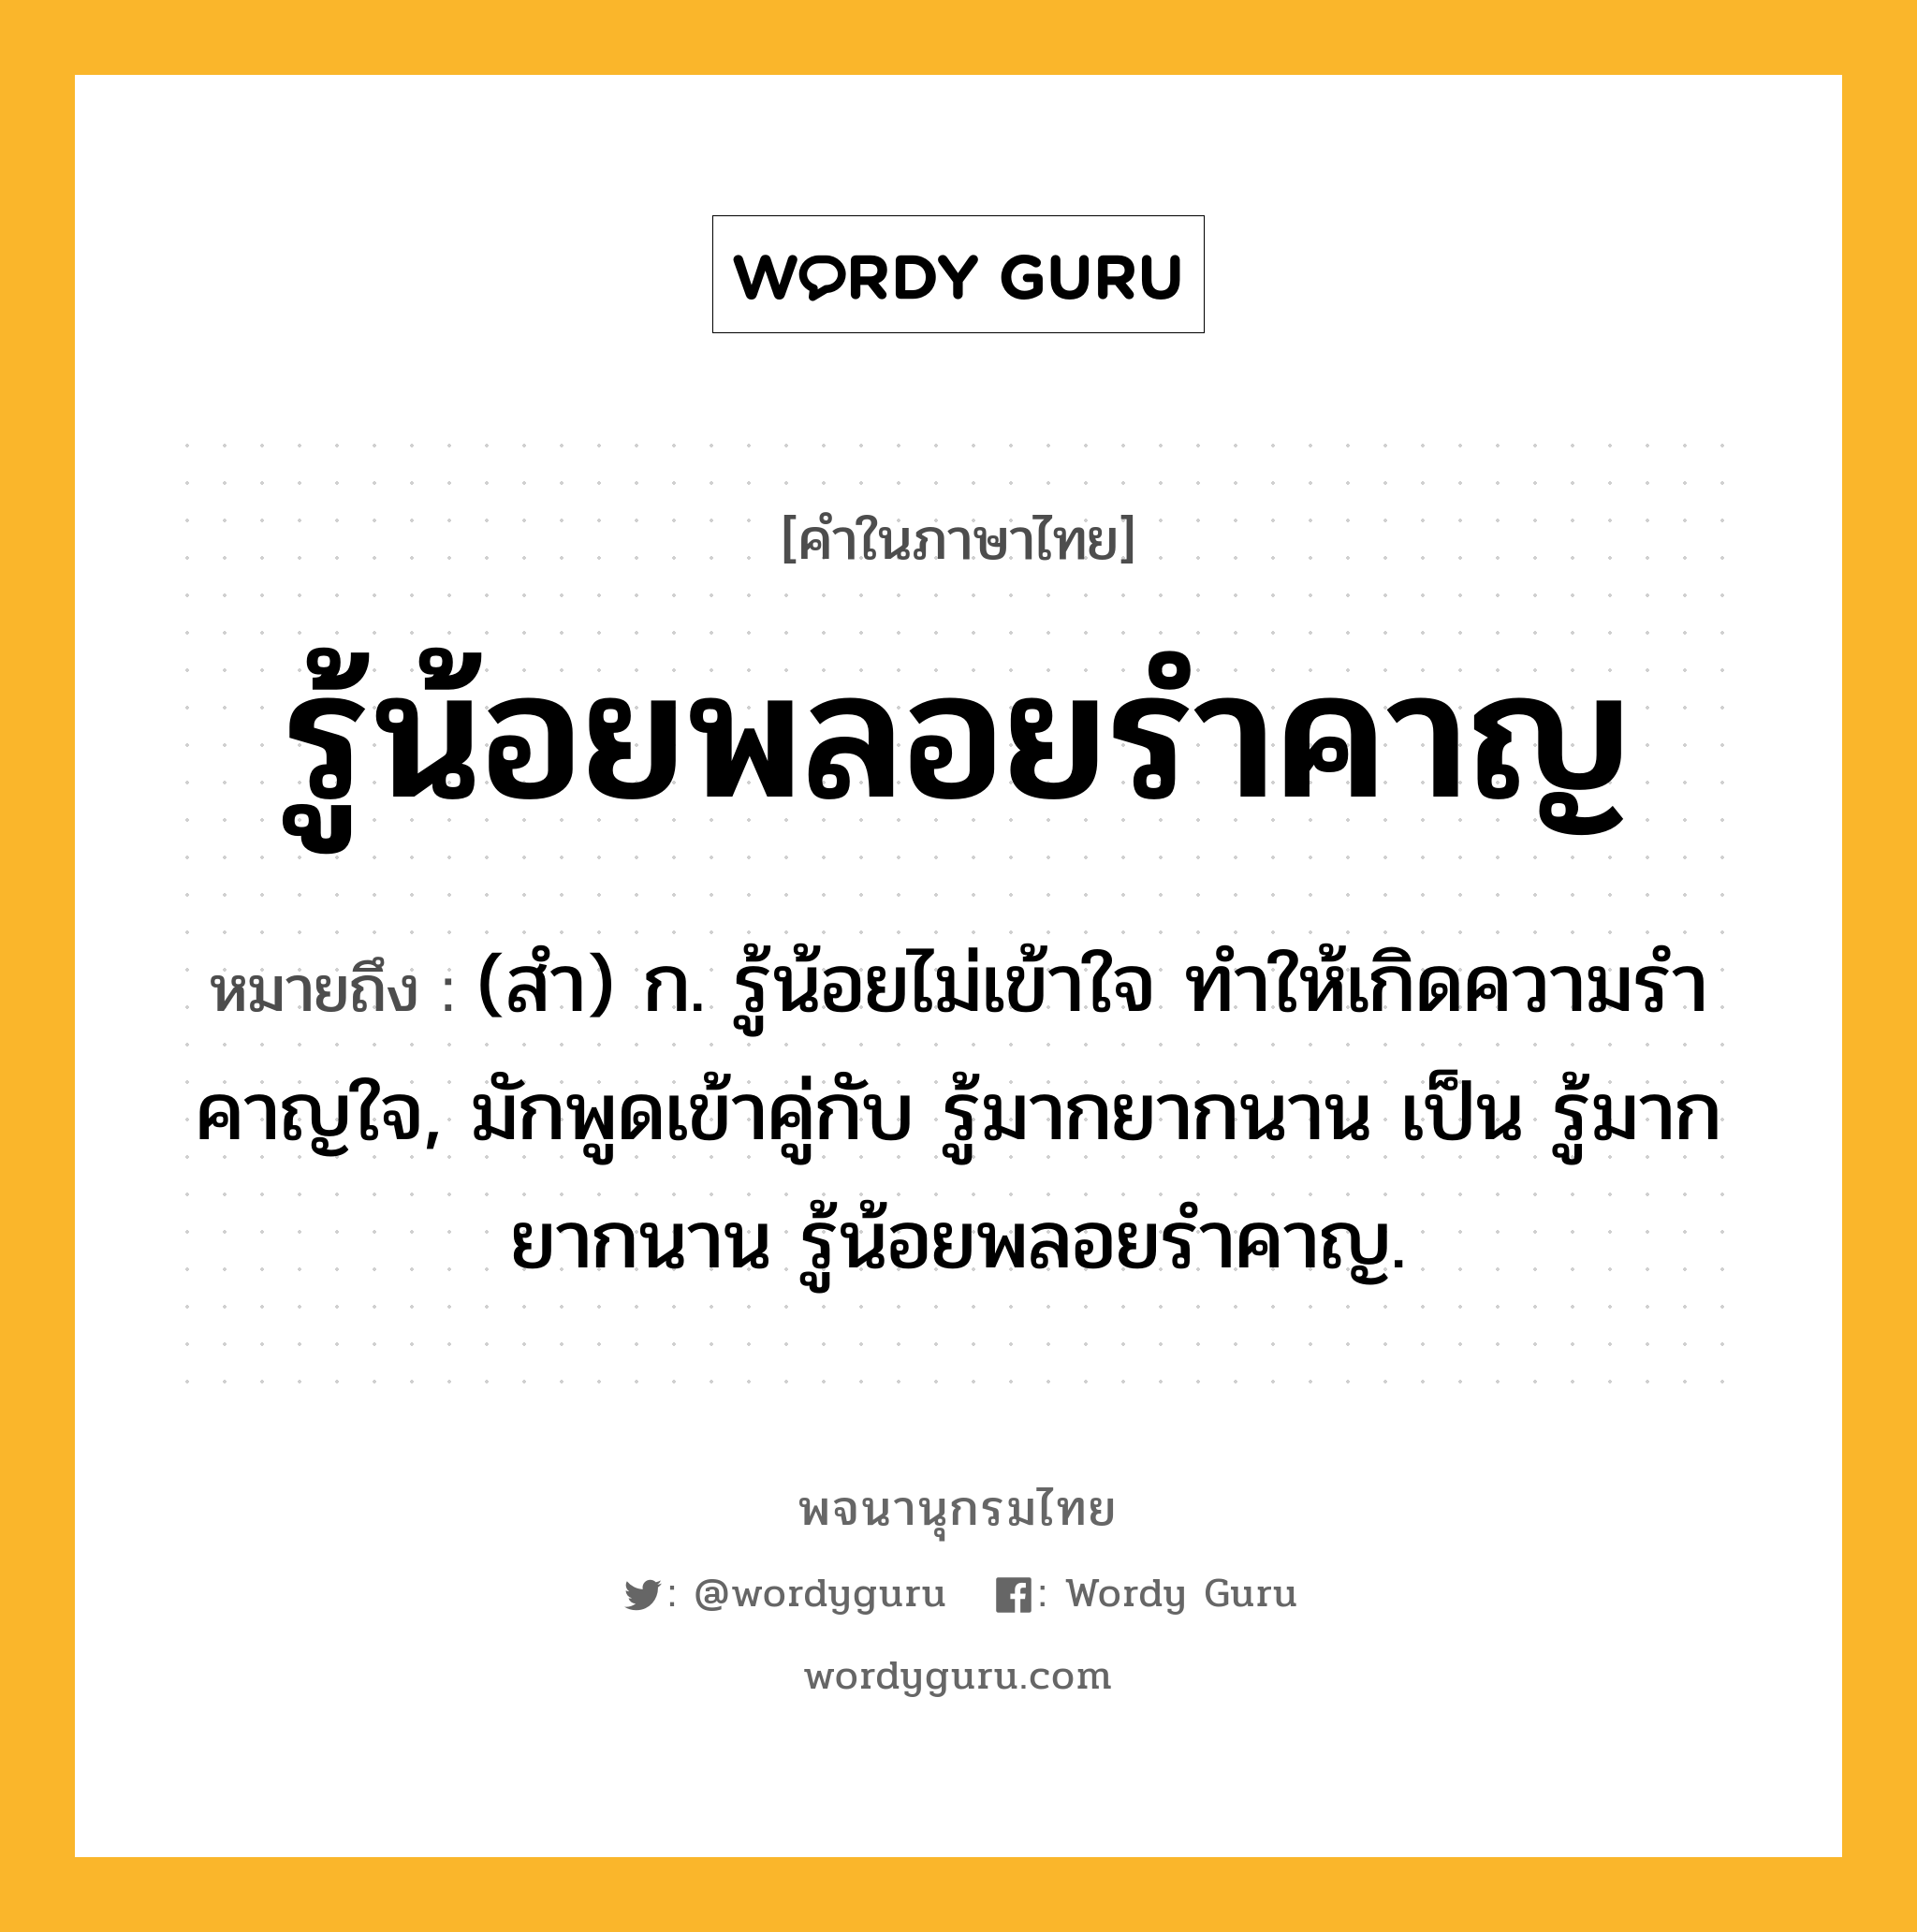 รู้น้อยพลอยรำคาญ หมายถึงอะไร?, คำในภาษาไทย รู้น้อยพลอยรำคาญ หมายถึง (สํา) ก. รู้น้อยไม่เข้าใจ ทําให้เกิดความรําคาญใจ, มักพูดเข้าคู่กับ รู้มากยากนาน เป็น รู้มากยากนาน รู้น้อยพลอยรําคาญ.